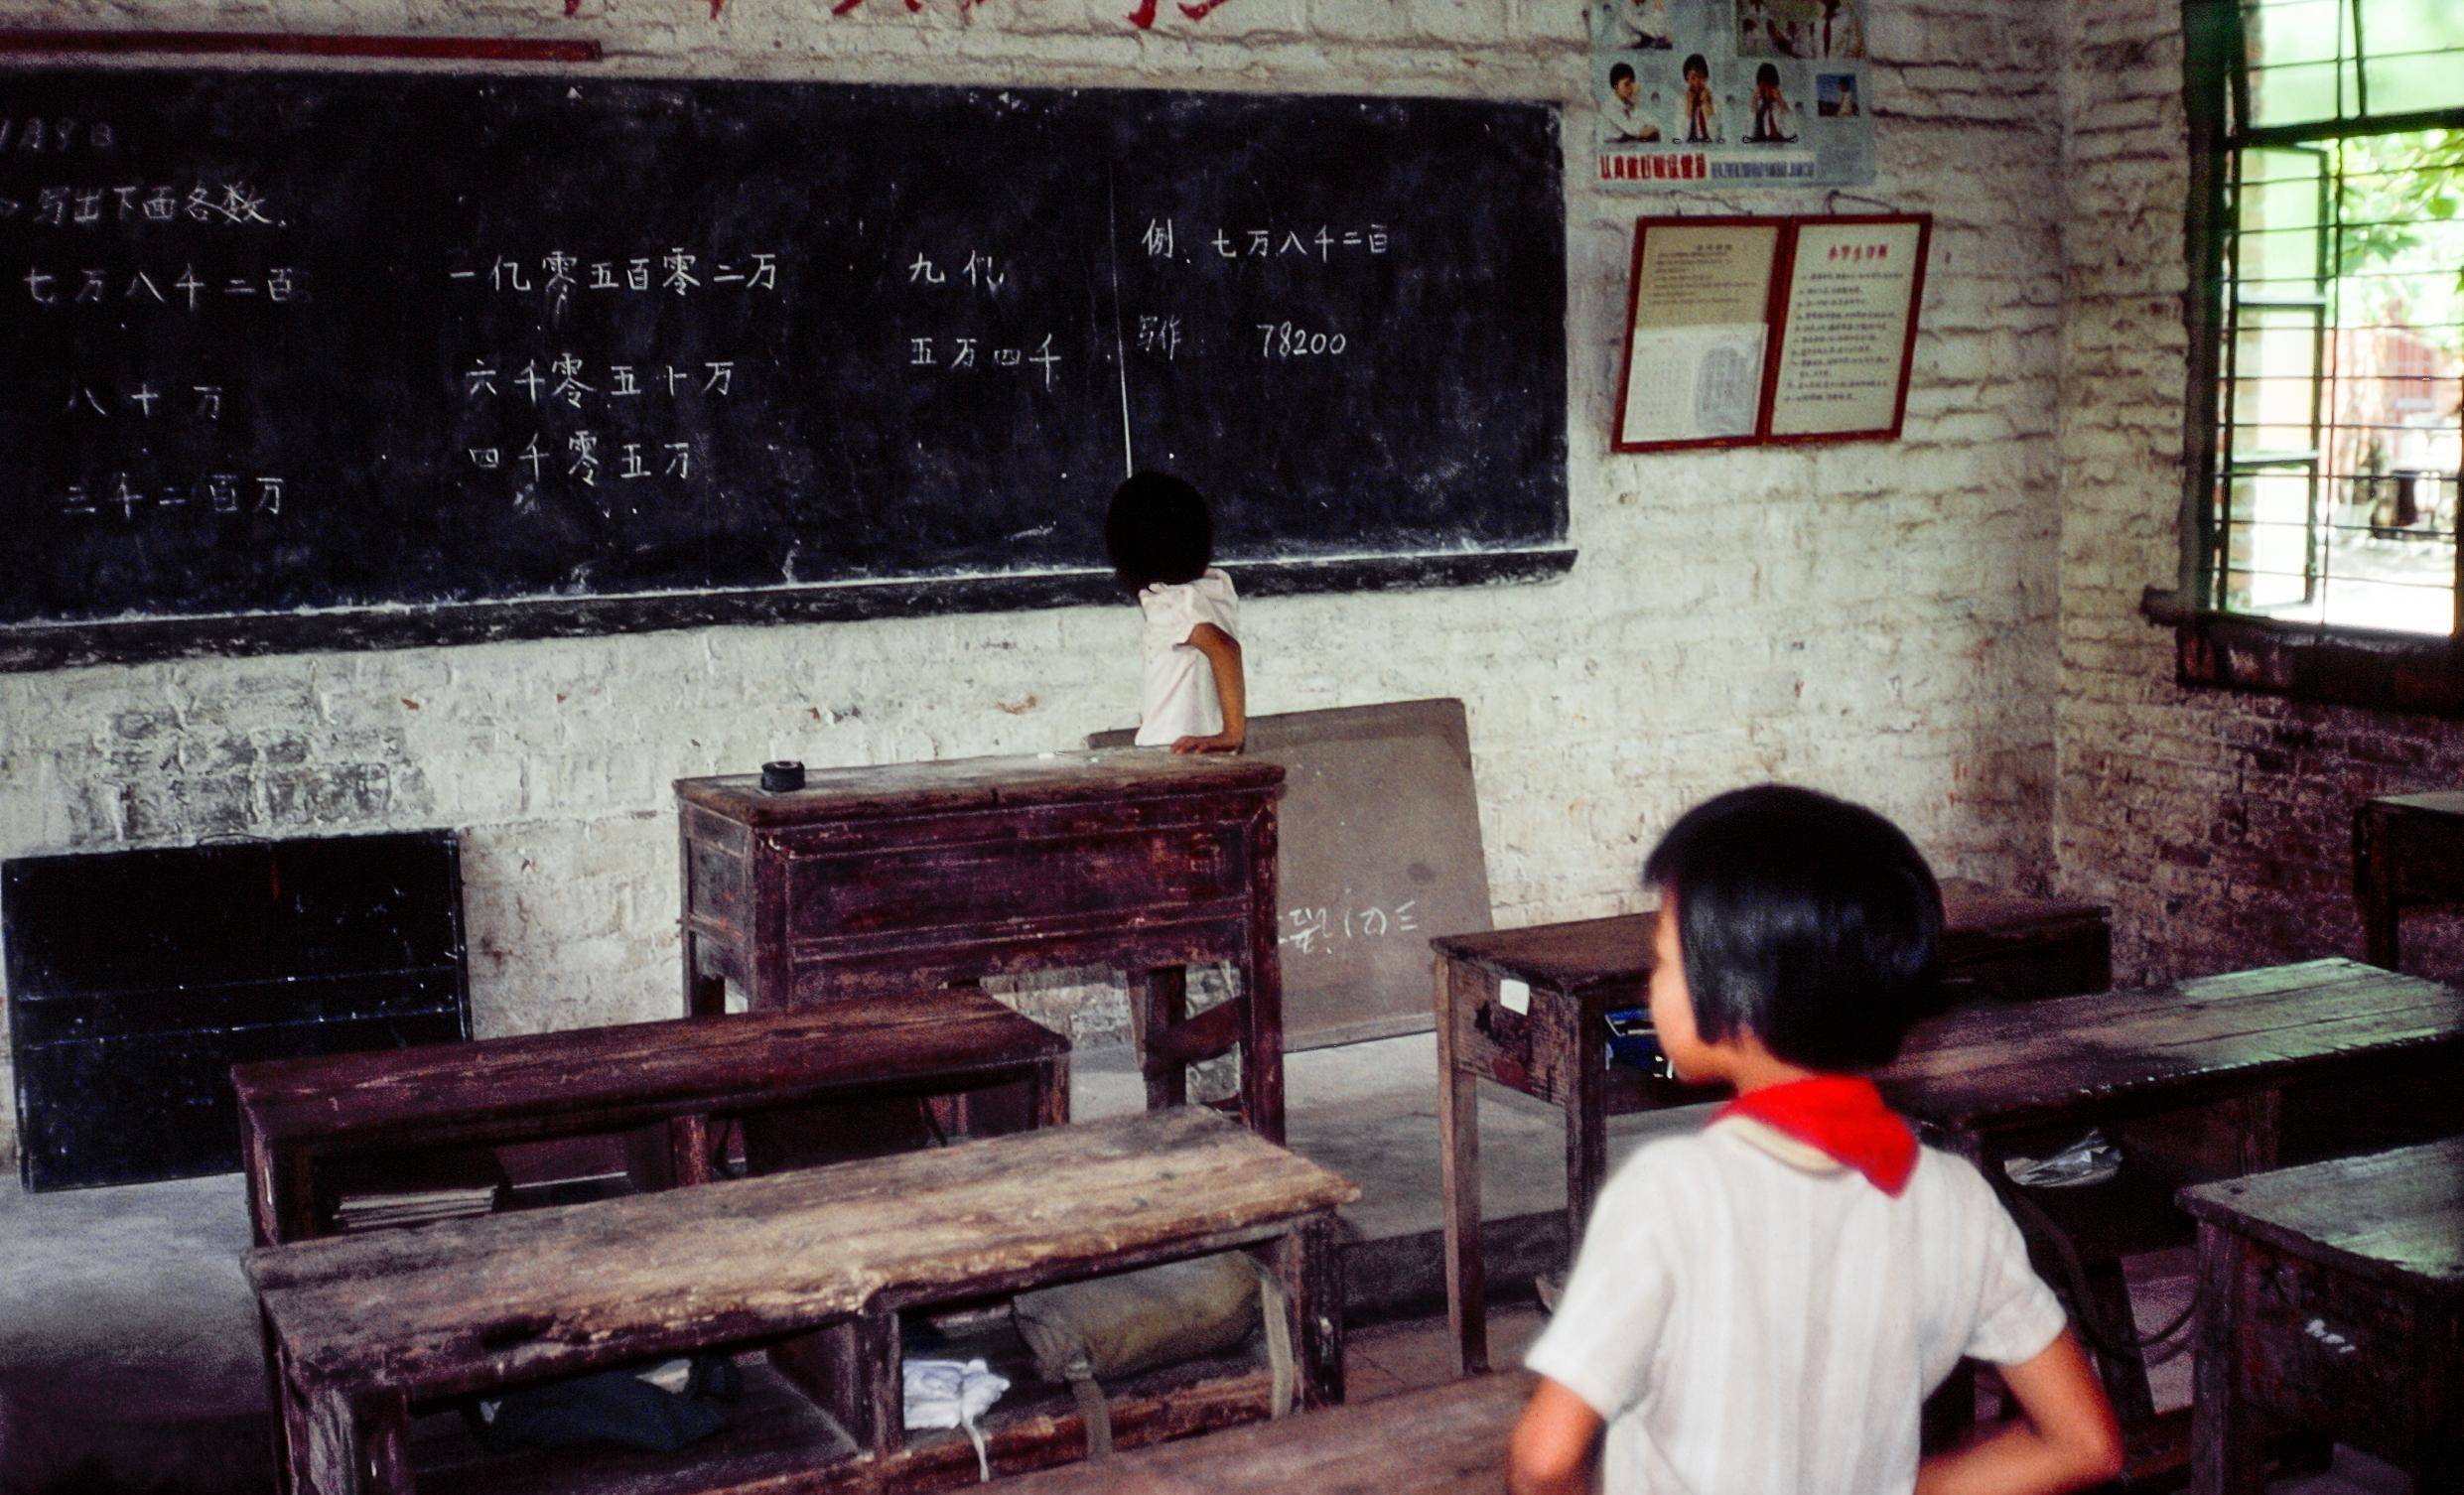 八十年代的教室照片图片